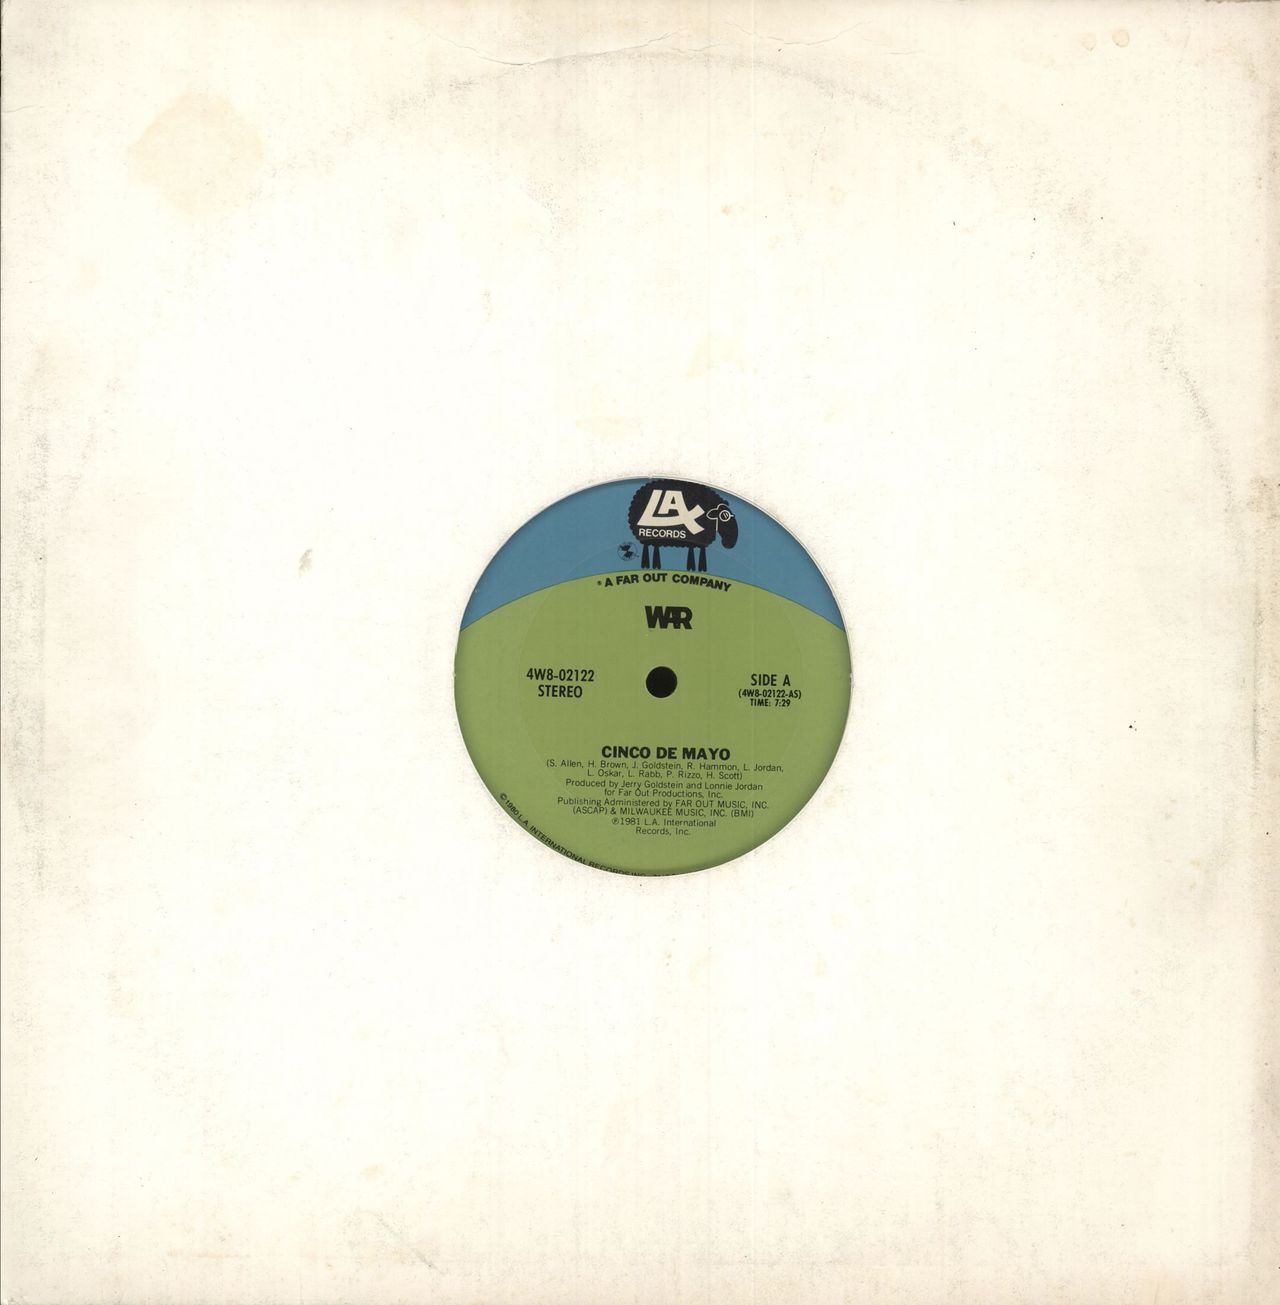 War Cinco De Mayo US 12" vinyl single (12 inch record / Maxi-single) 4W8-02122